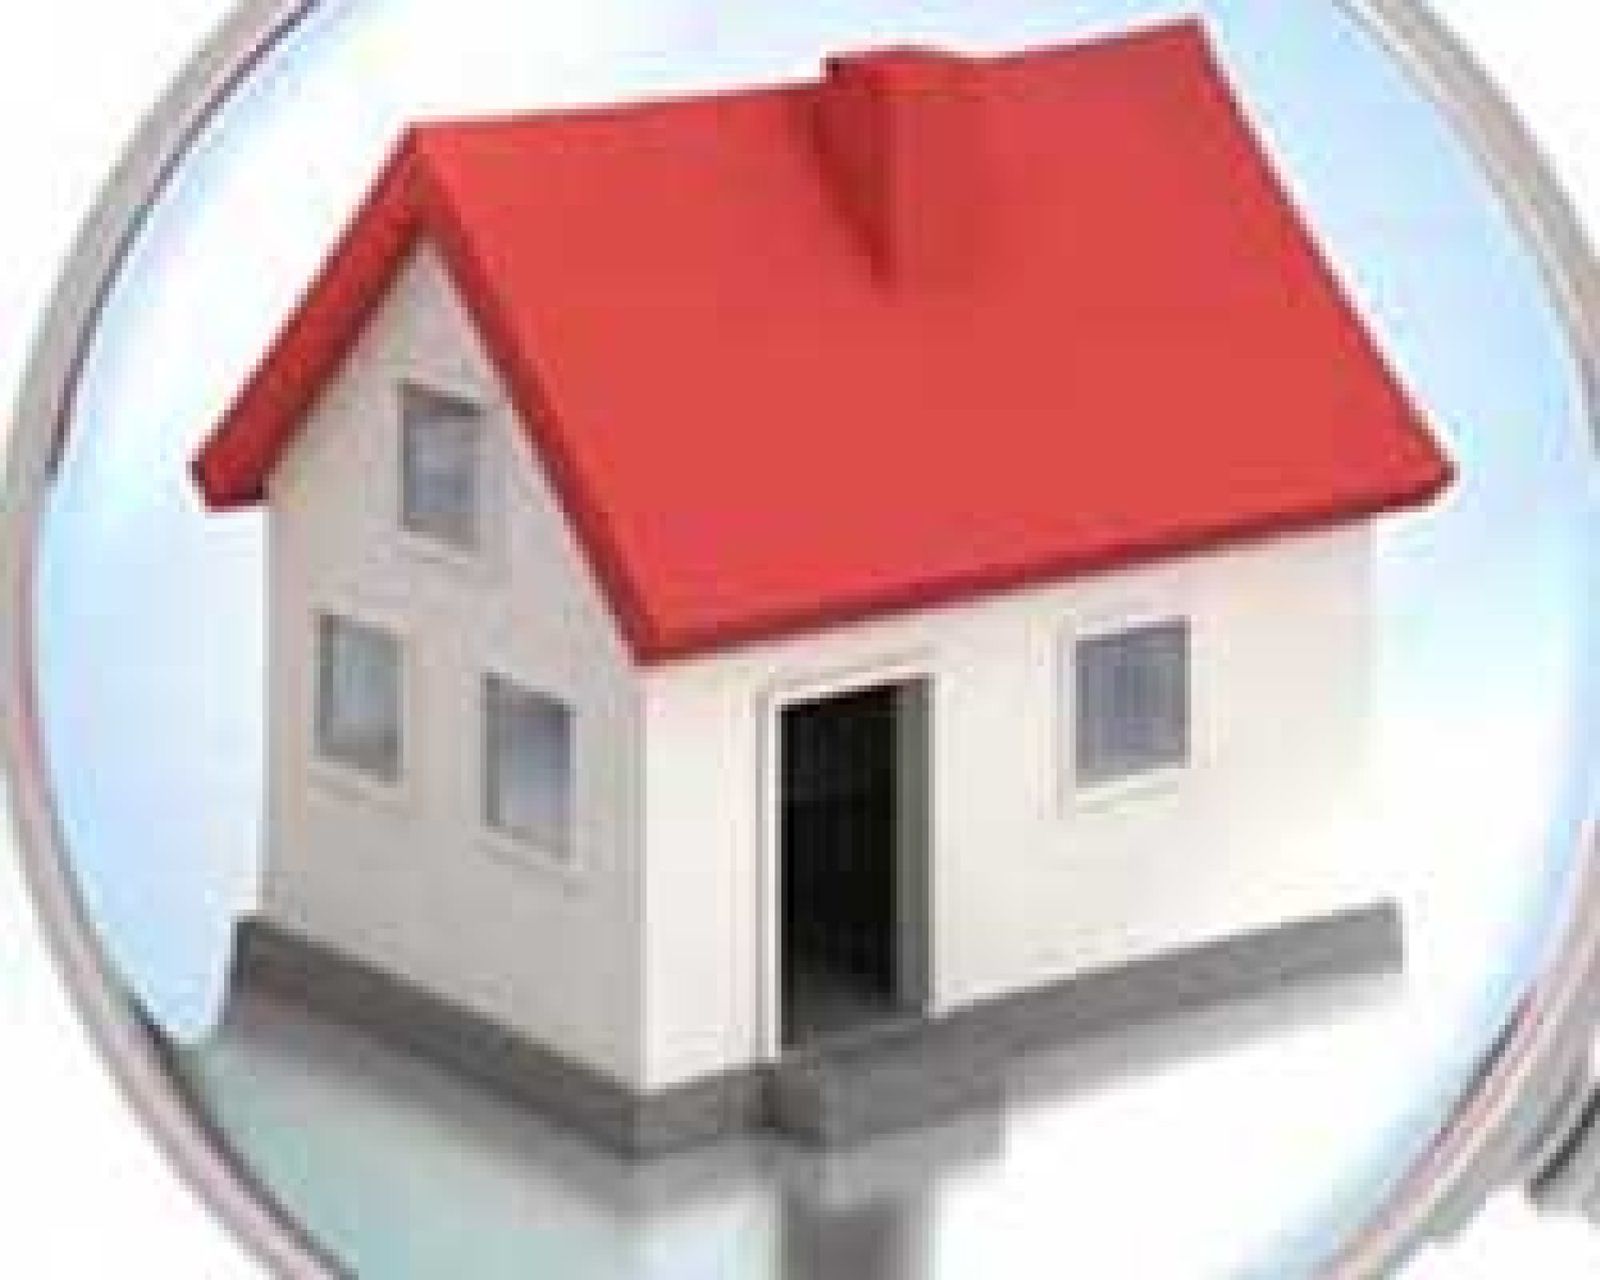 Foto: El precio de la vivienda usada cae un 10,5% en el último año, según 'idealista.com'